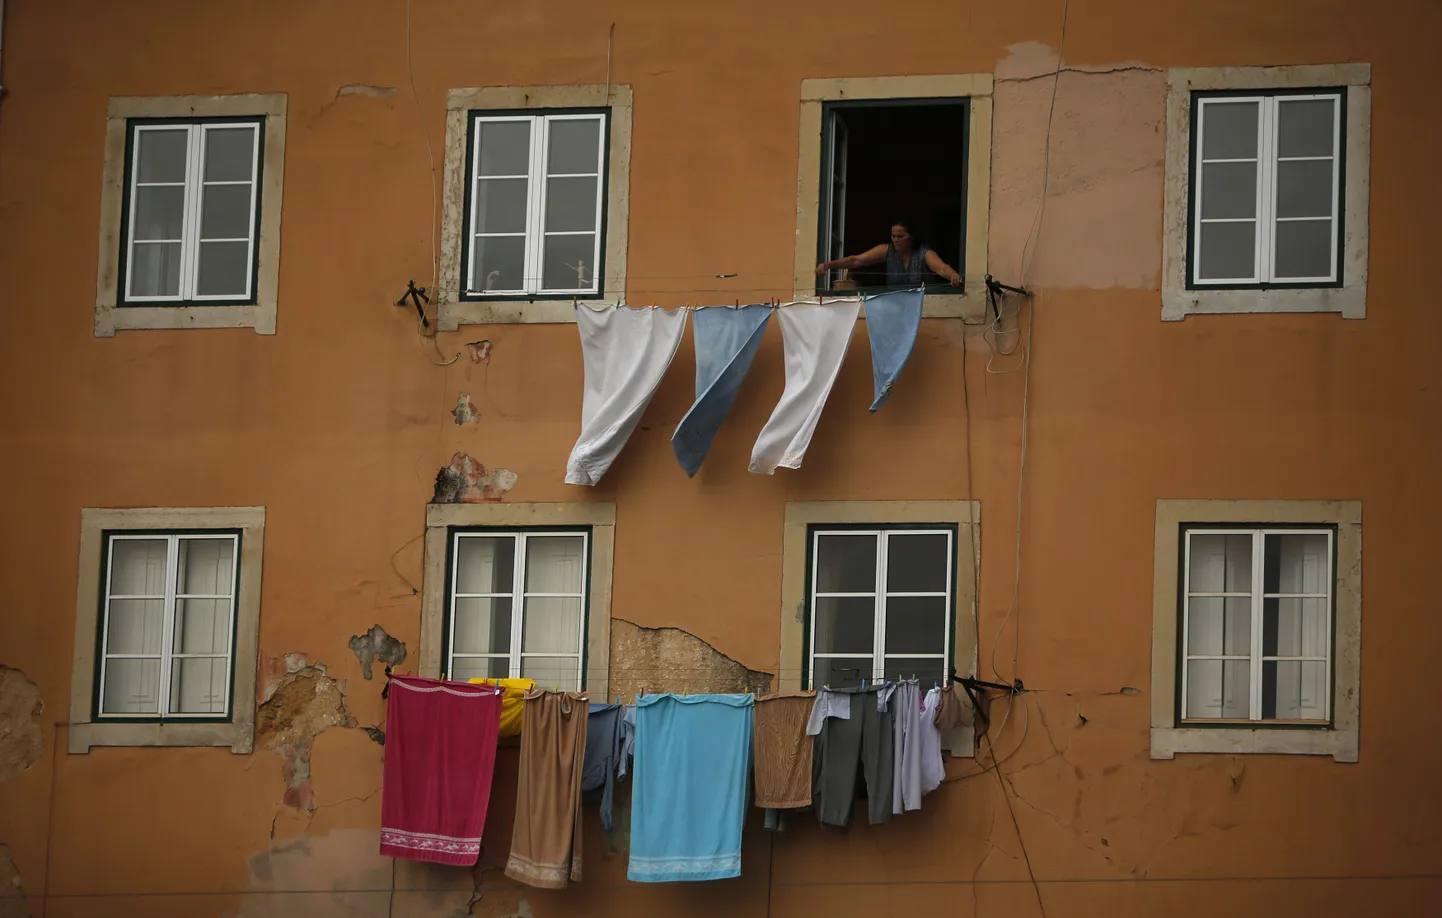 Naine riputab Lissabonis pesu kuivama